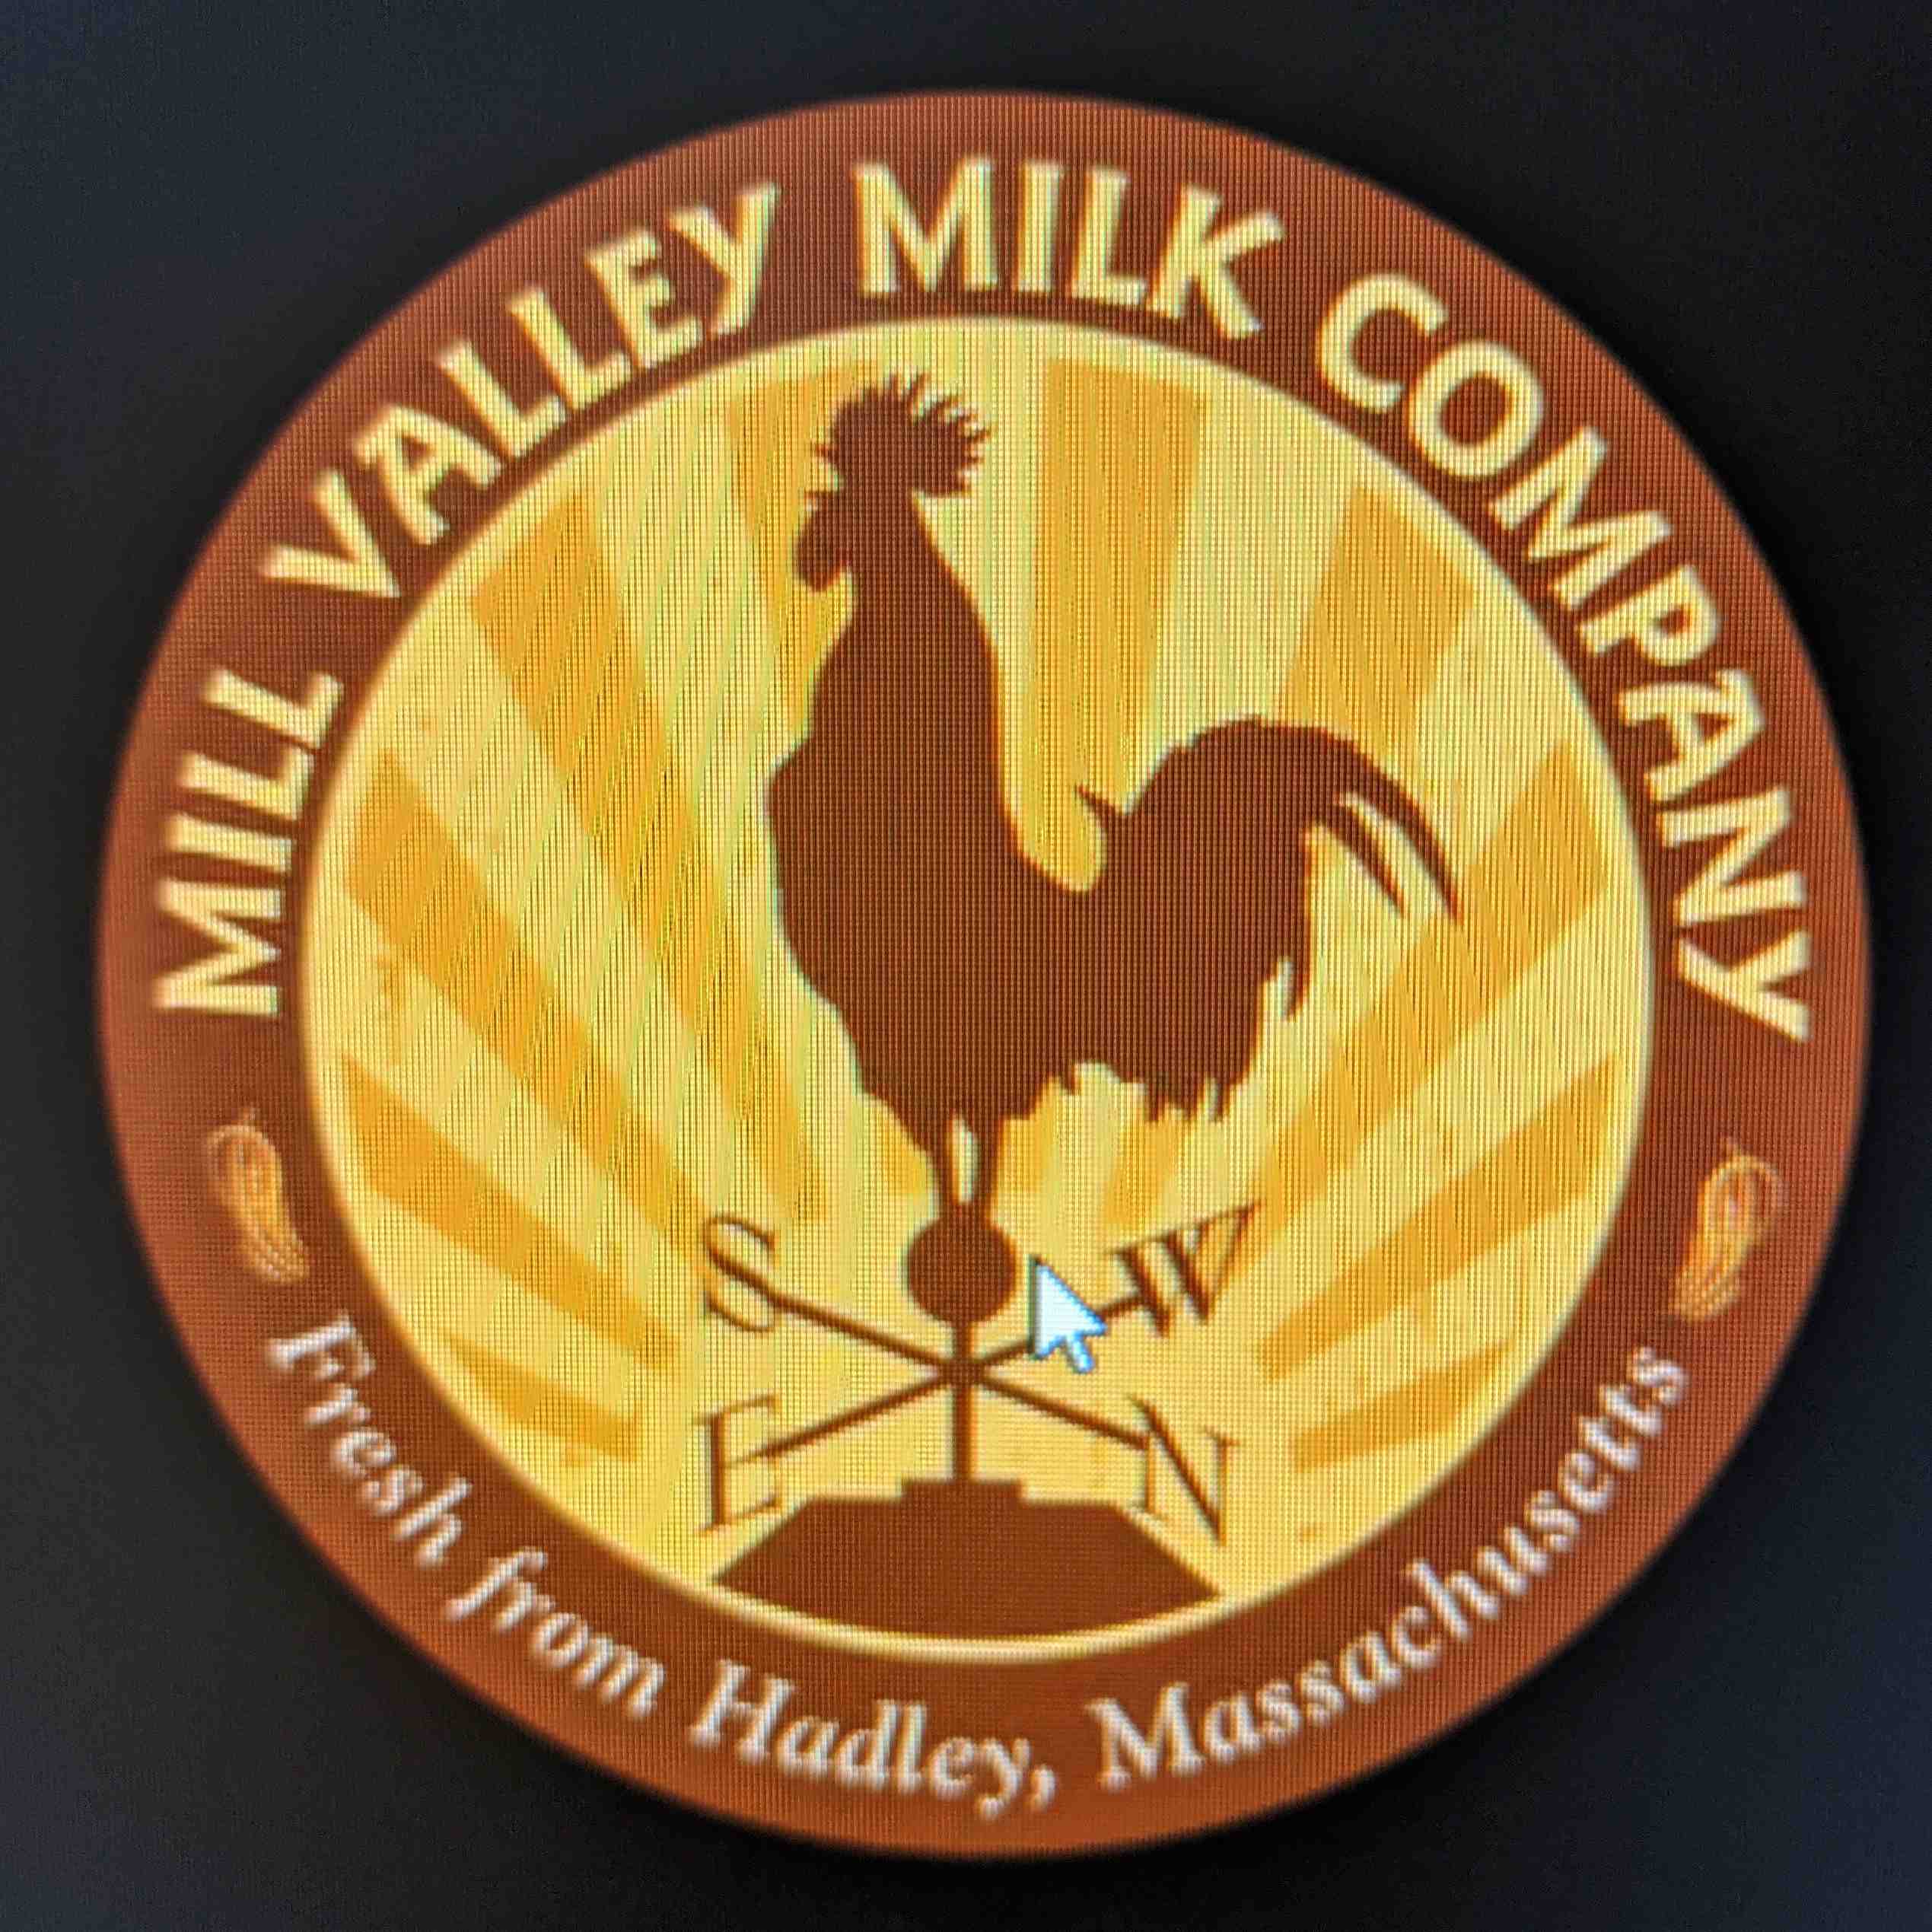 Maple Valley Creamery